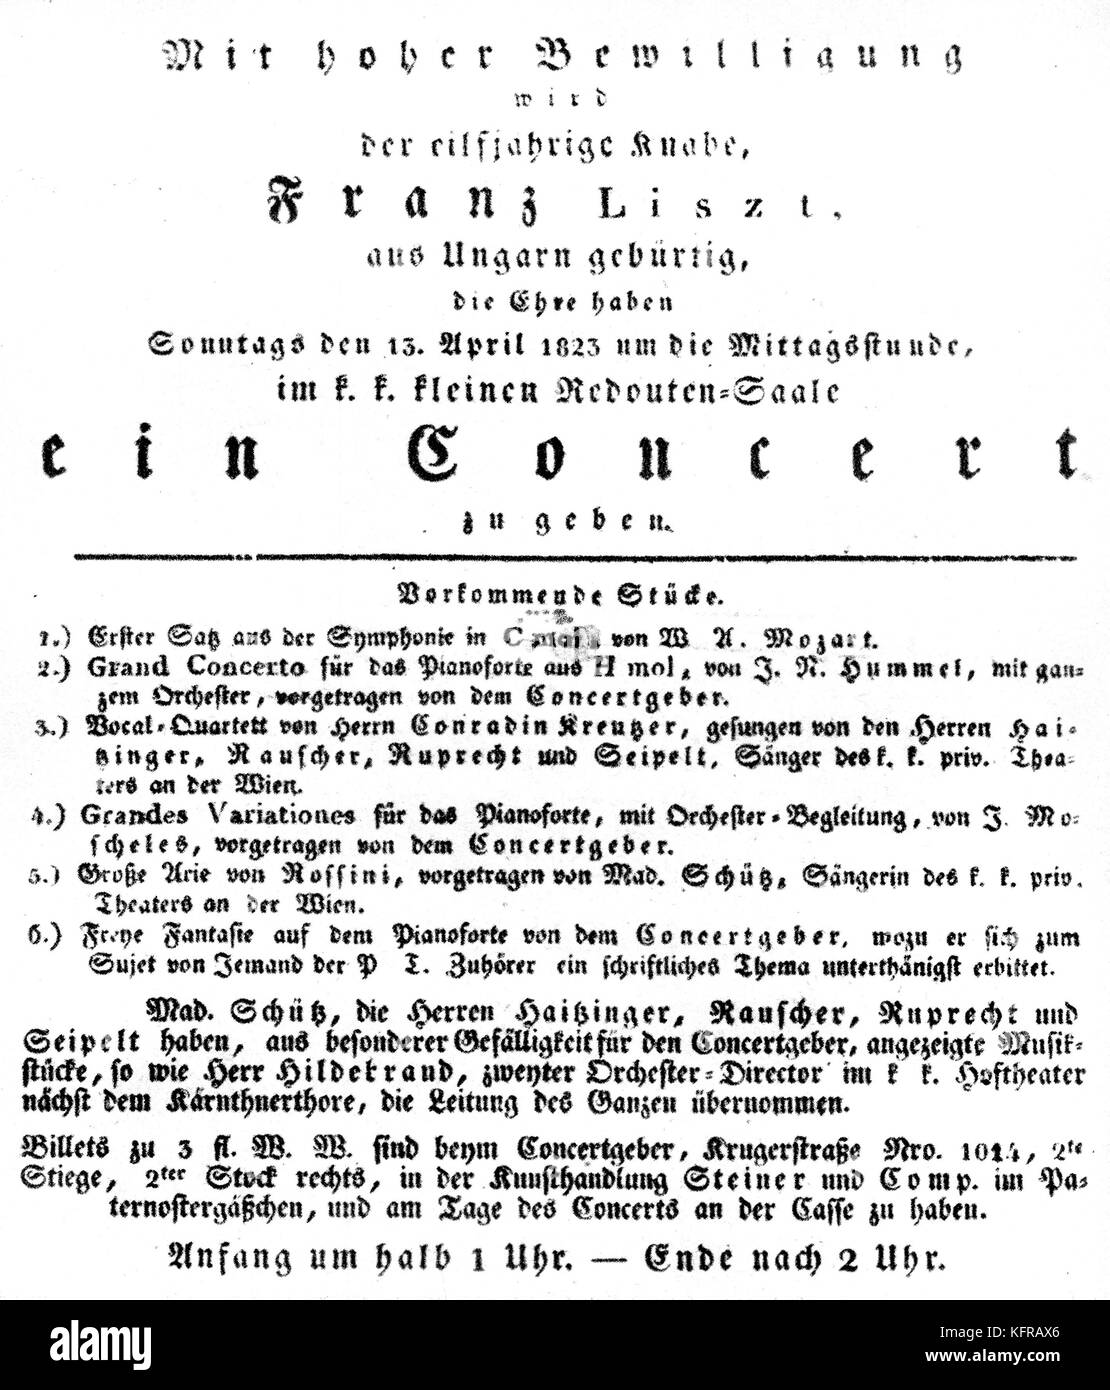 Programm des Konzerts von Franz Liszt, 13. April 1823, Wien, Österreich durchgeführt. FL: ungarische Pianist und Komponist, 22. Oktober 1811 - vom 31. Juli 1886. Stockfoto